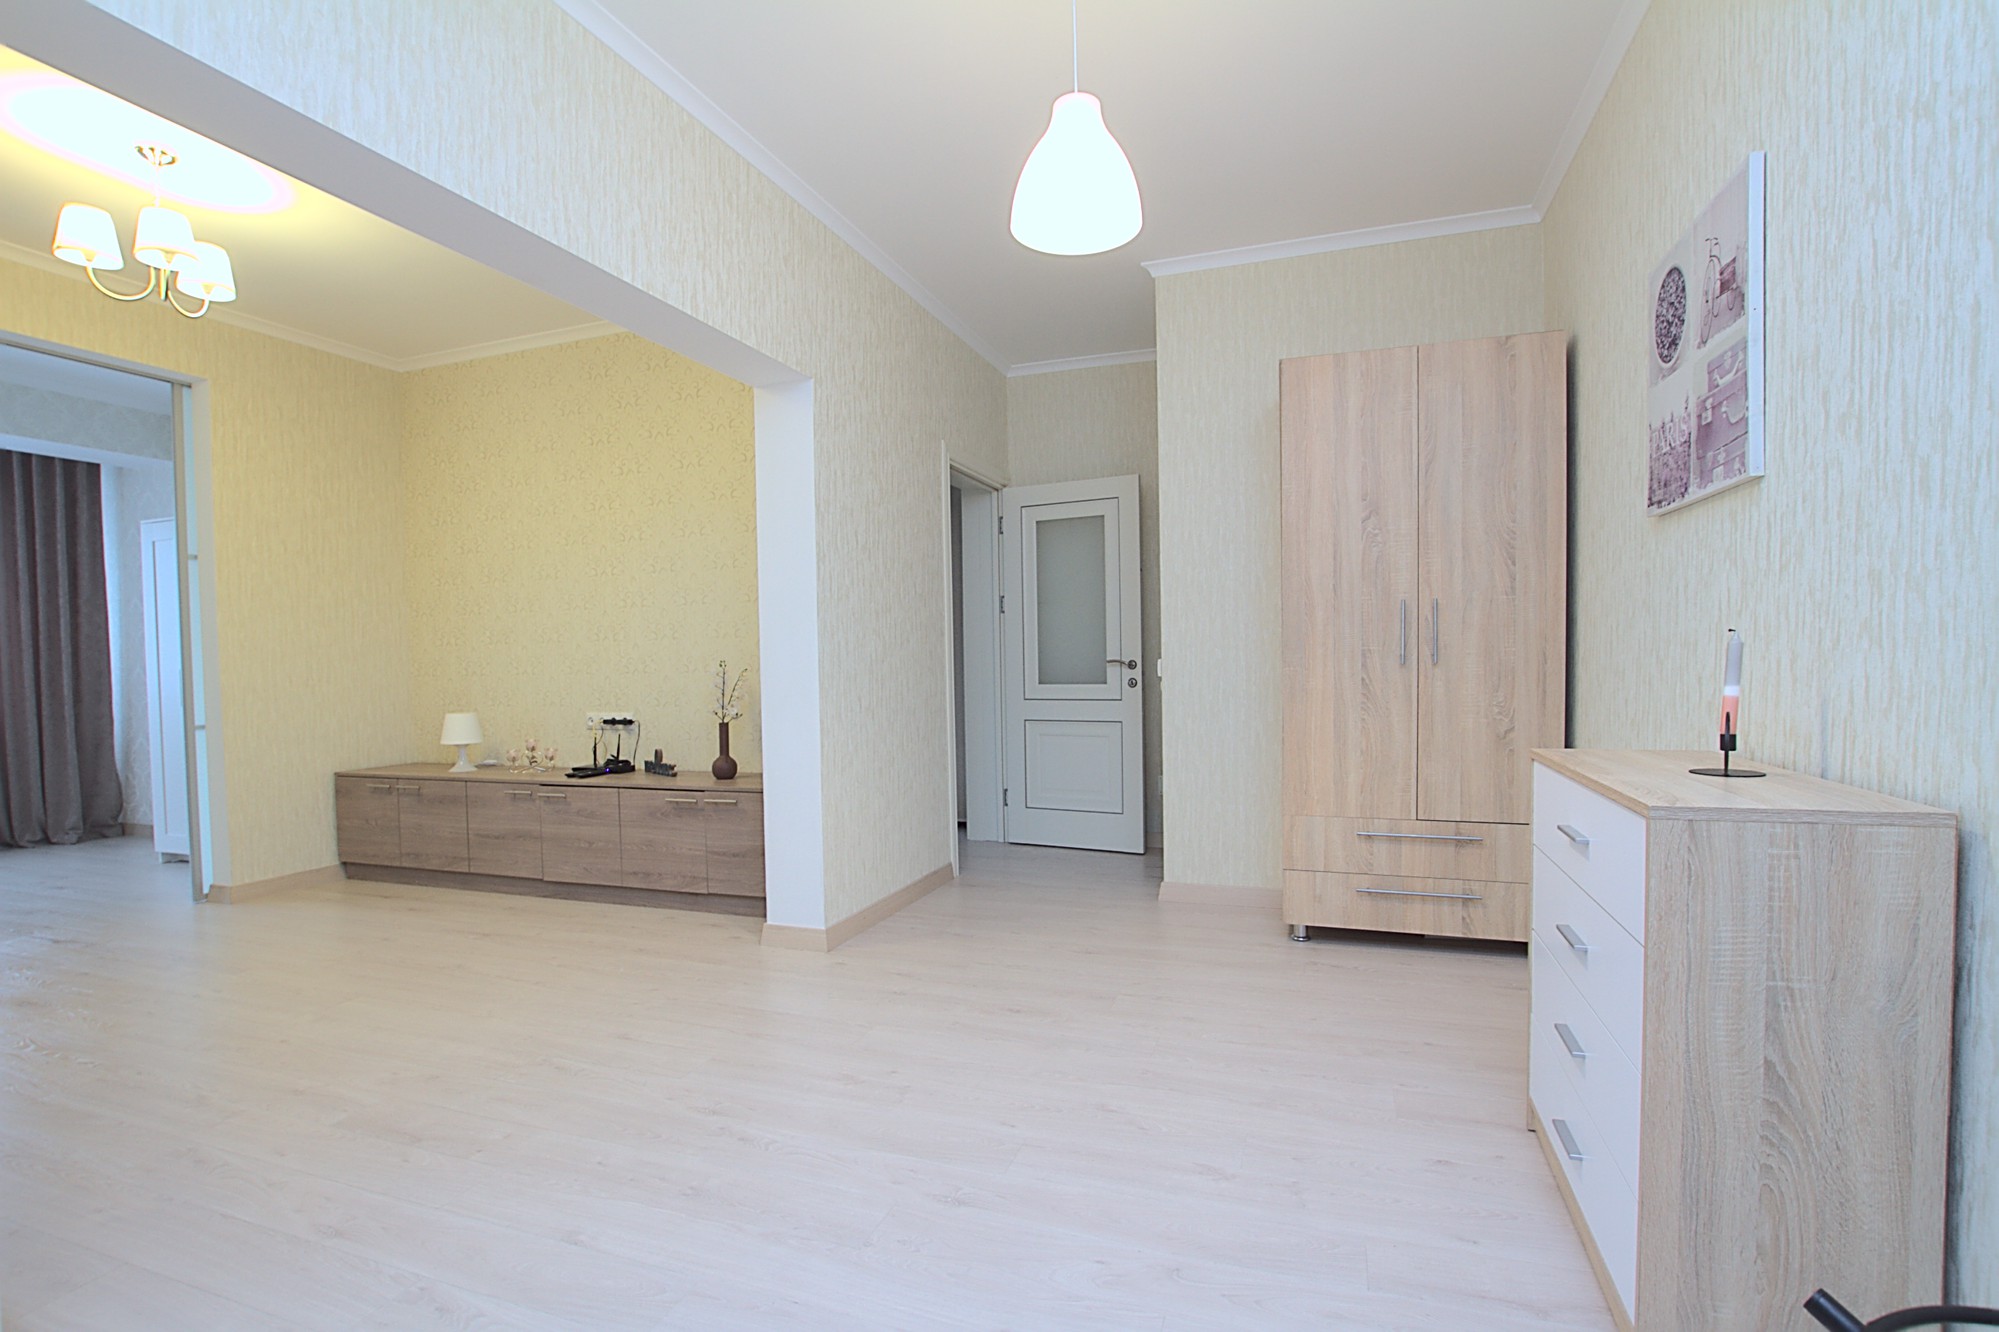 Аренда квартиры в Кишиневе, Ботаника: 3 комнаты, 1 спальня, 80 m²